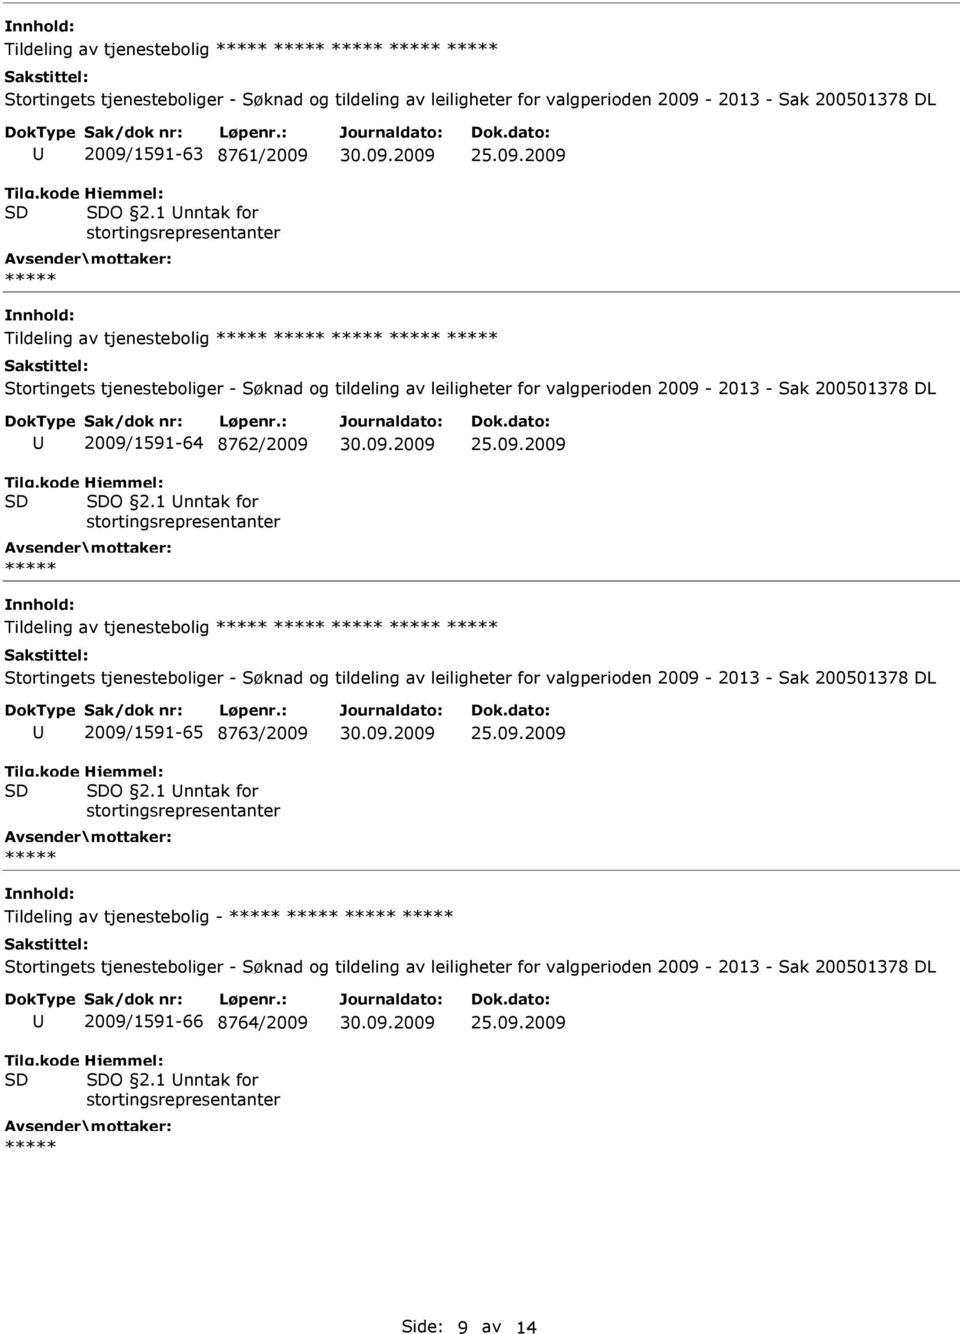 1 nntak for Tildeling av tjenestebolig 2009/1591-65 8763/2009 O 2.